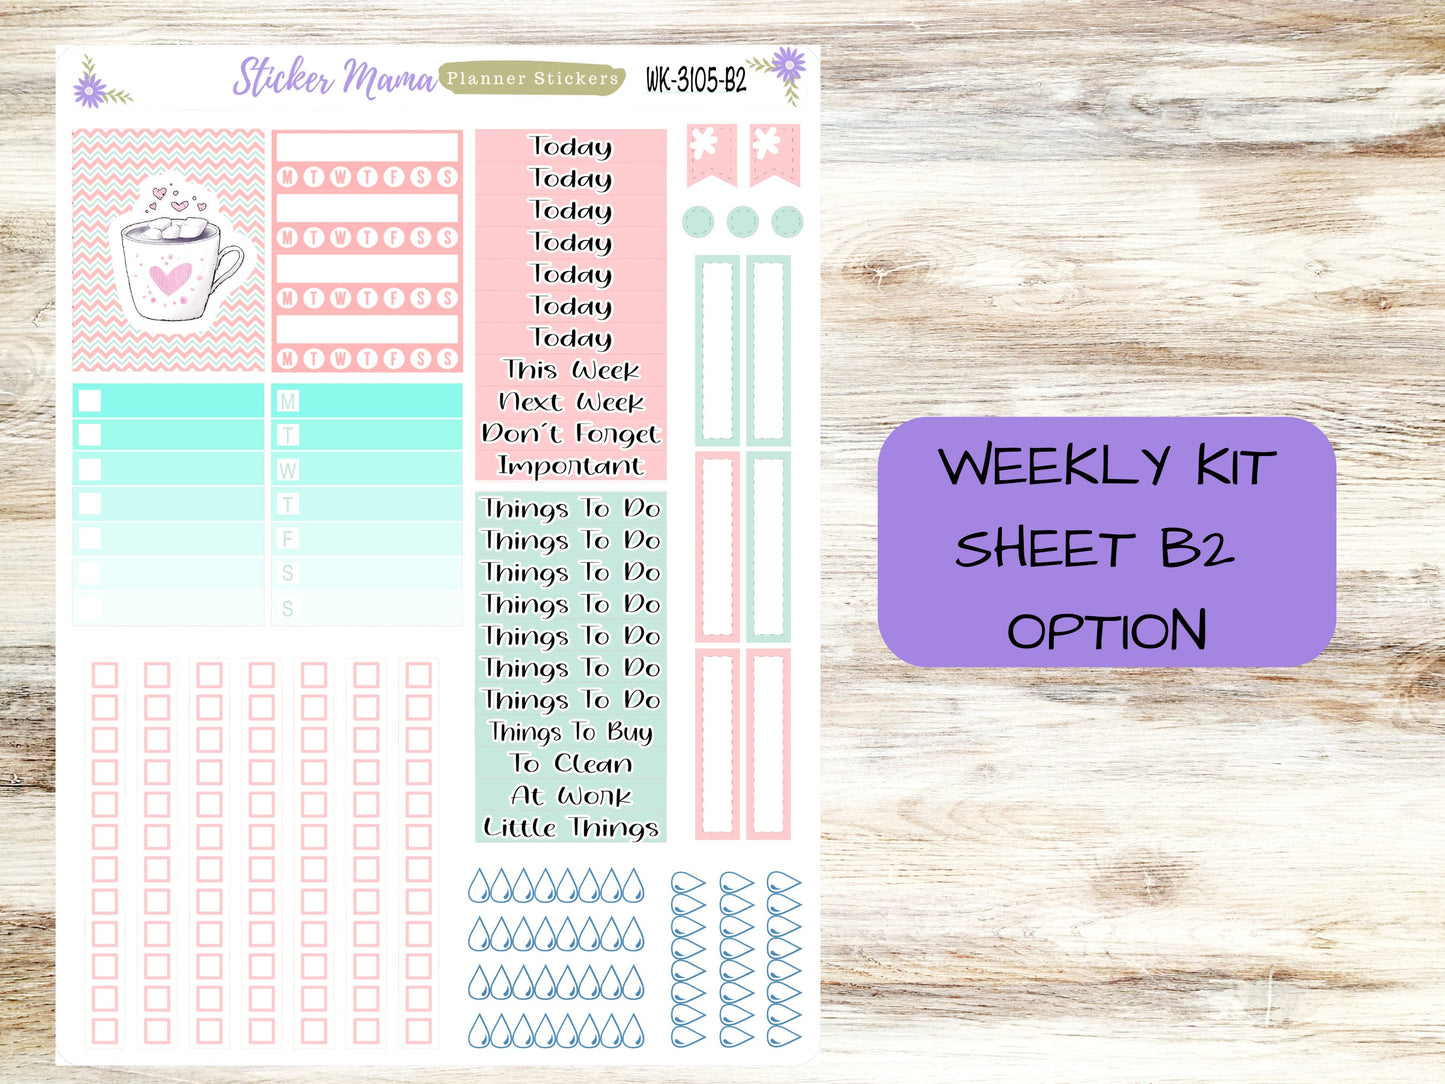 WK-3105 - Hello, Love!  || Weekly Planner Kit || Erin Condren || Hourly Planner Kit || Vertical Planner Kit